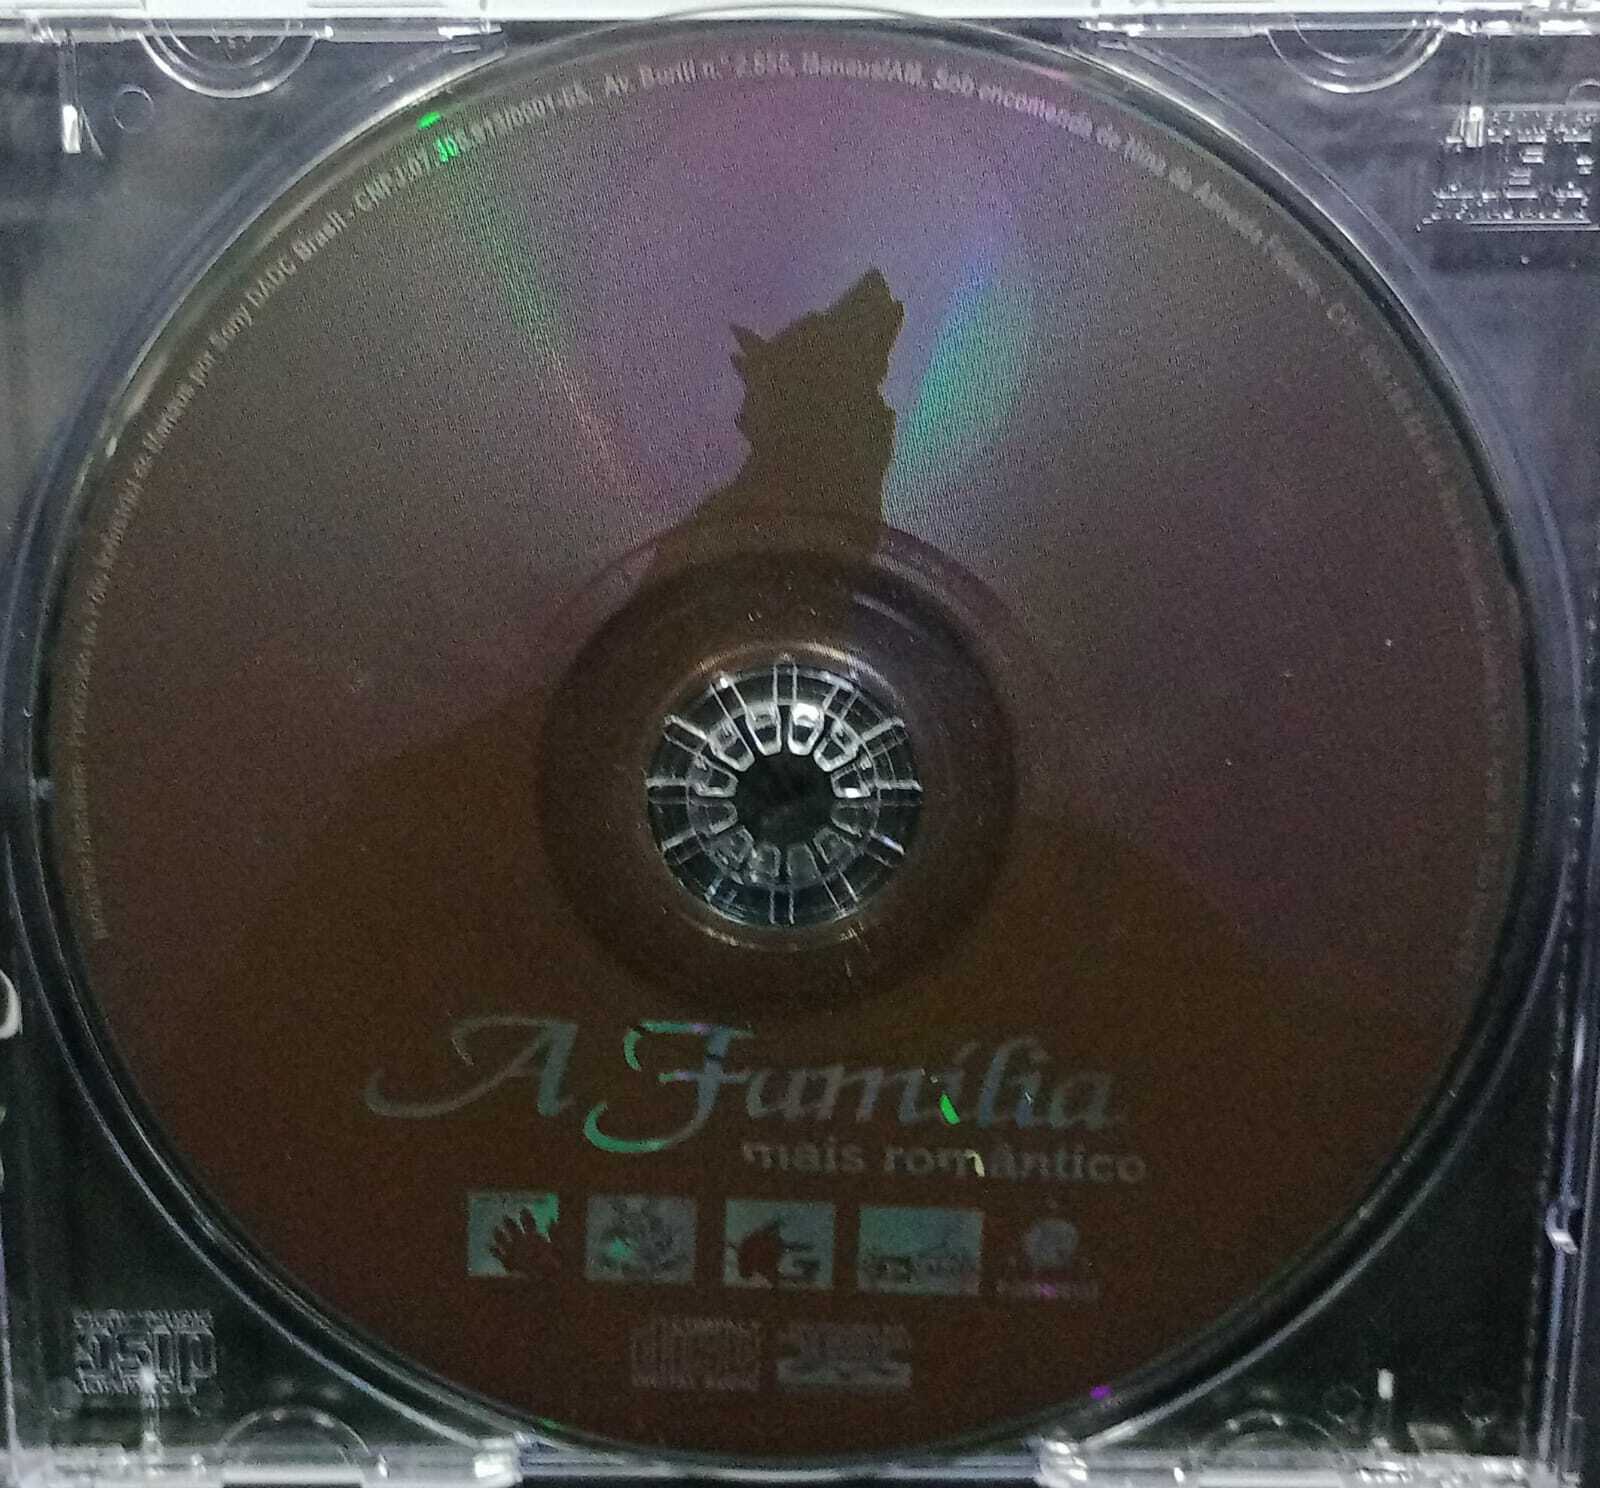 CD - Familia A - Mais Romântico